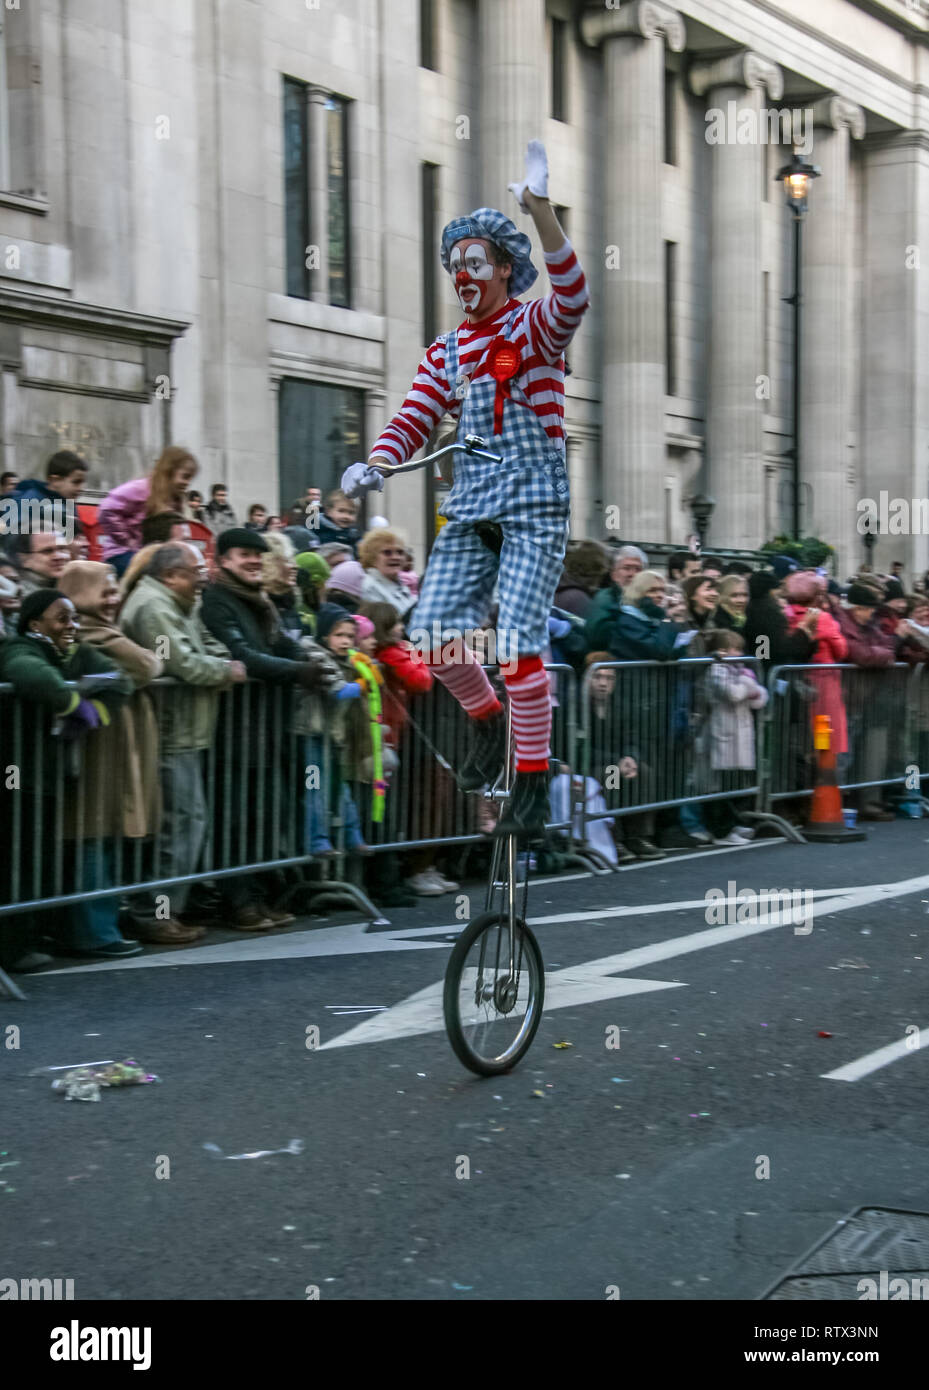 Londres, Royaume-Uni - 1 janvier 2007 : l'homme en costume clown monocycle de manèges, et des vagues de foule qui, pendant le défilé du Nouvel An. Banque D'Images